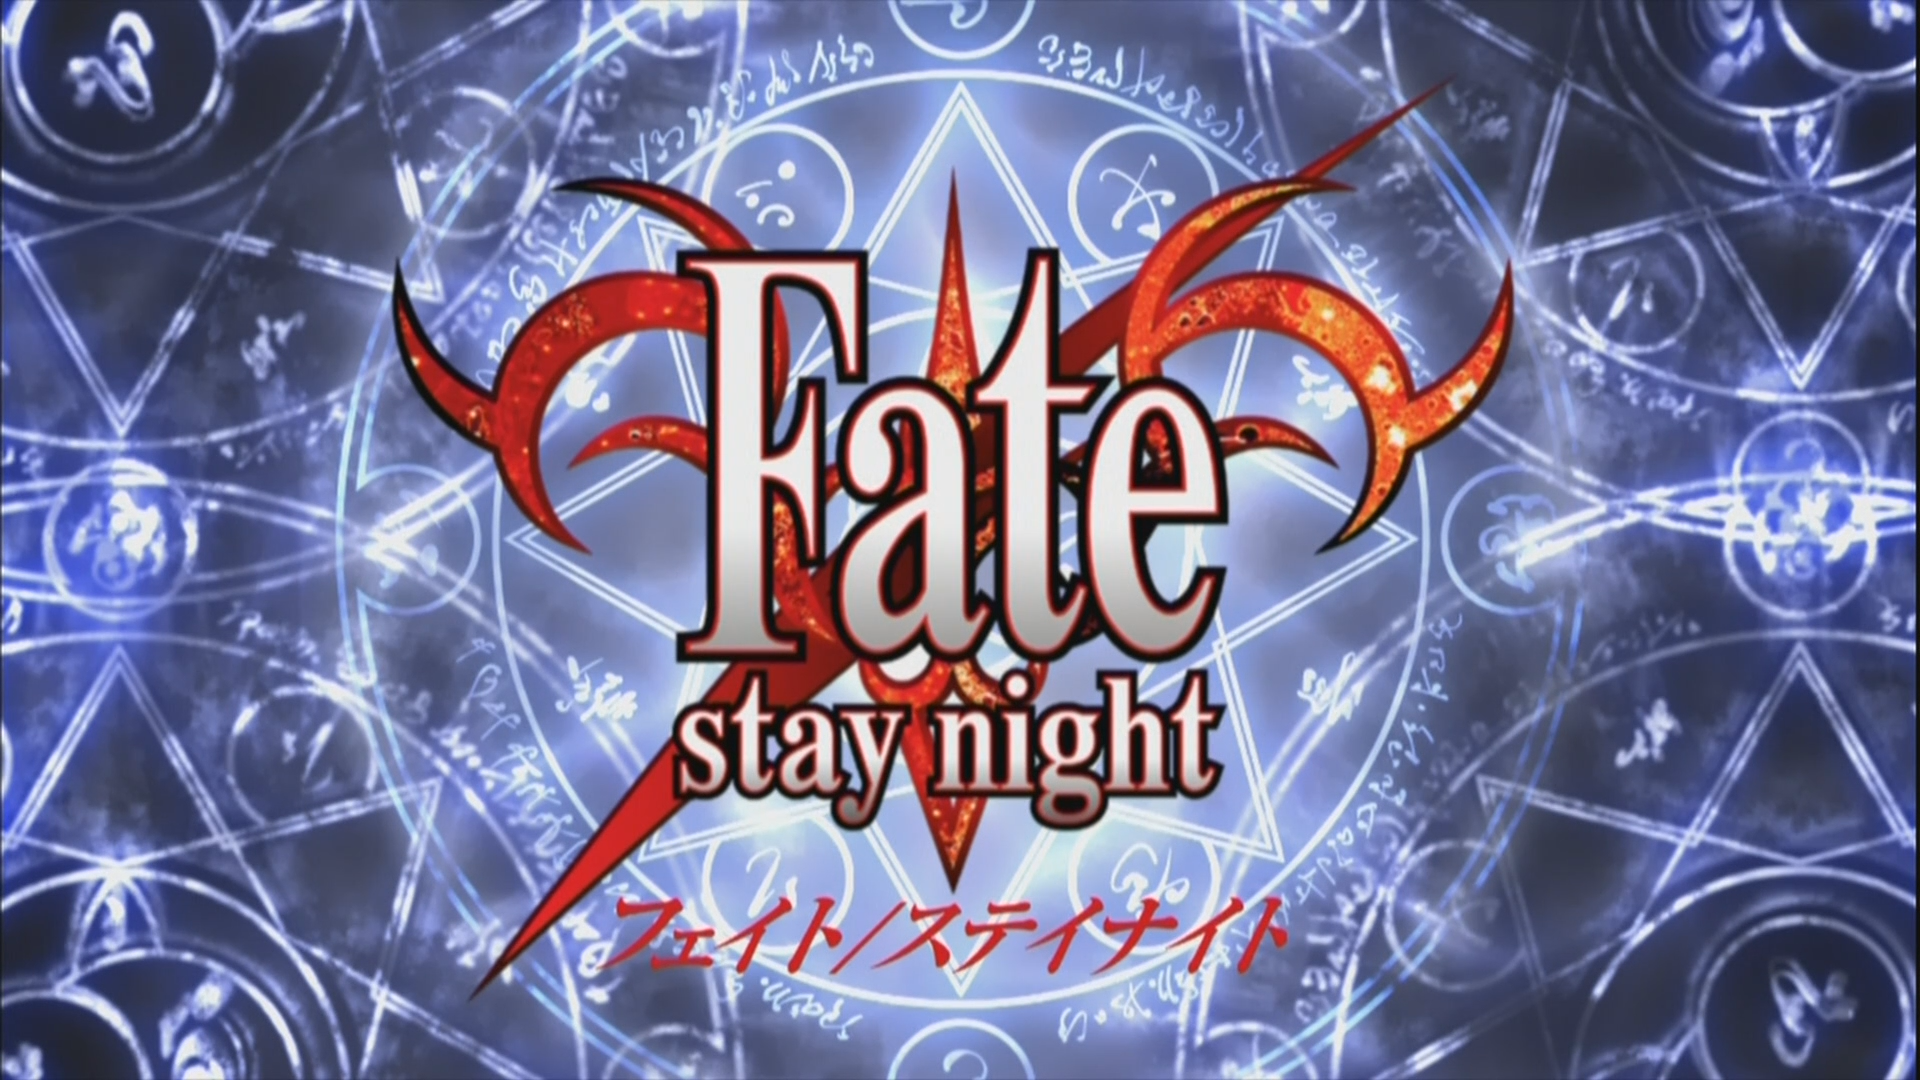 Fate/stay night Prólogo - Assista na Crunchyroll